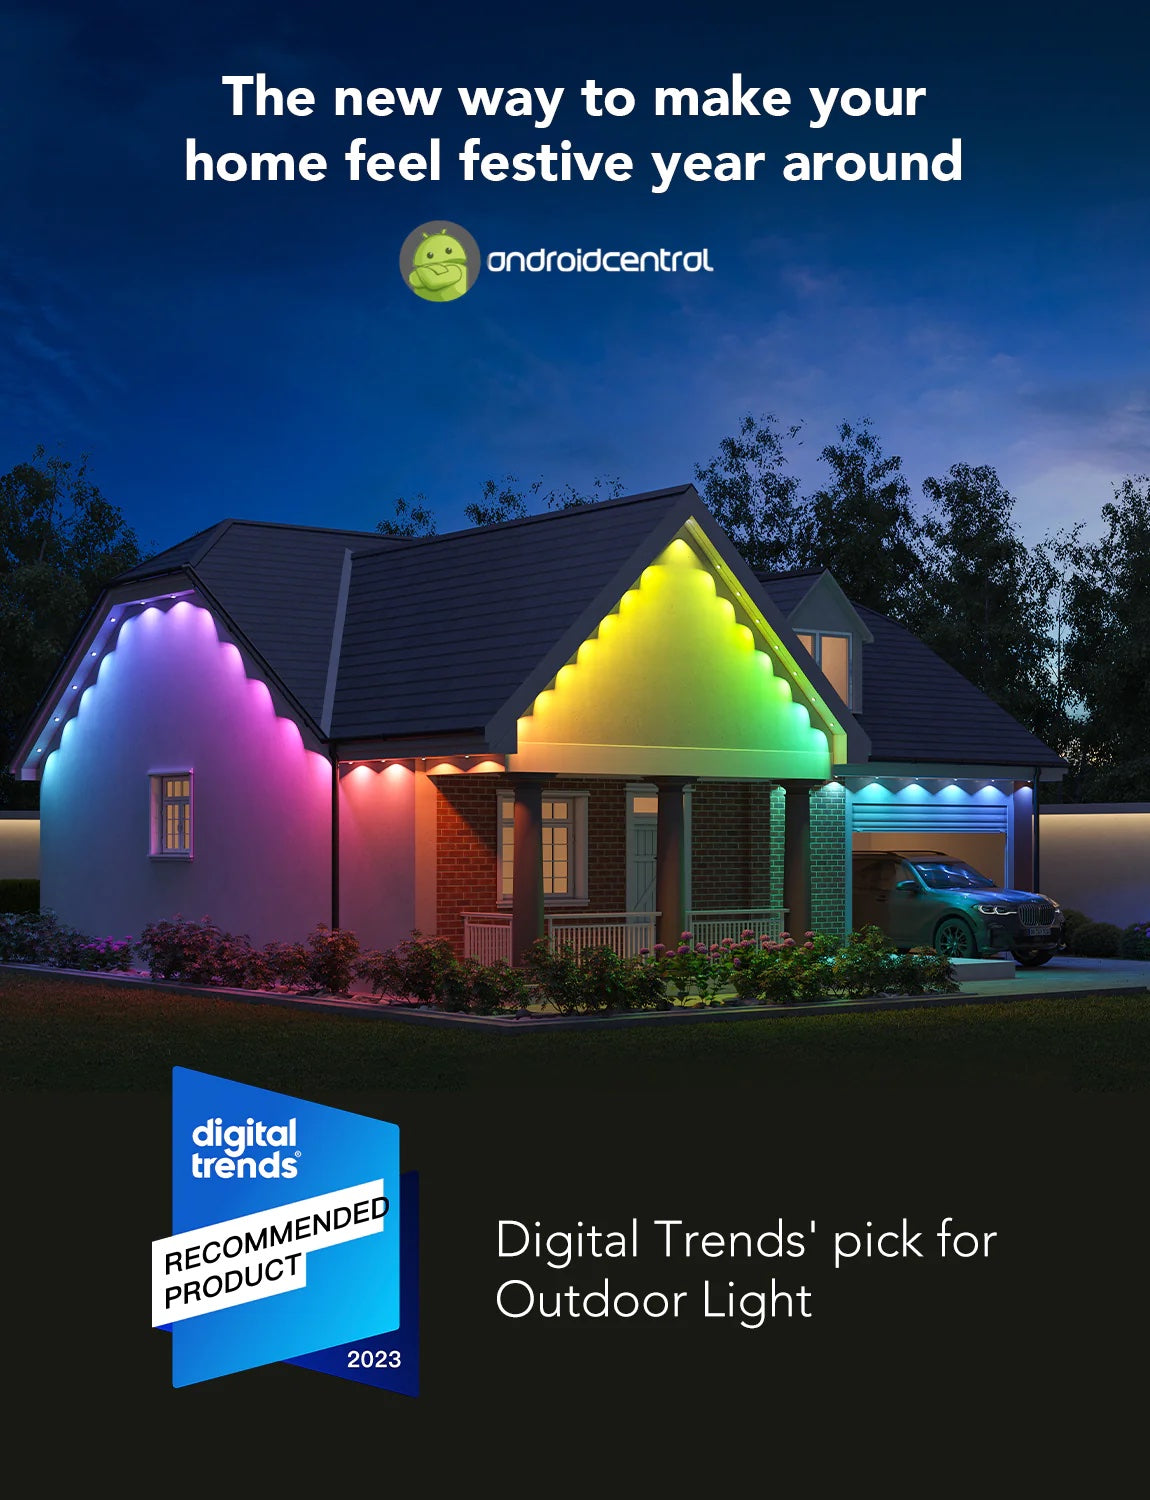 Govee Permanent Outdoor Lights (30m) - Smart IP67 RGBIC Outdoor Lights